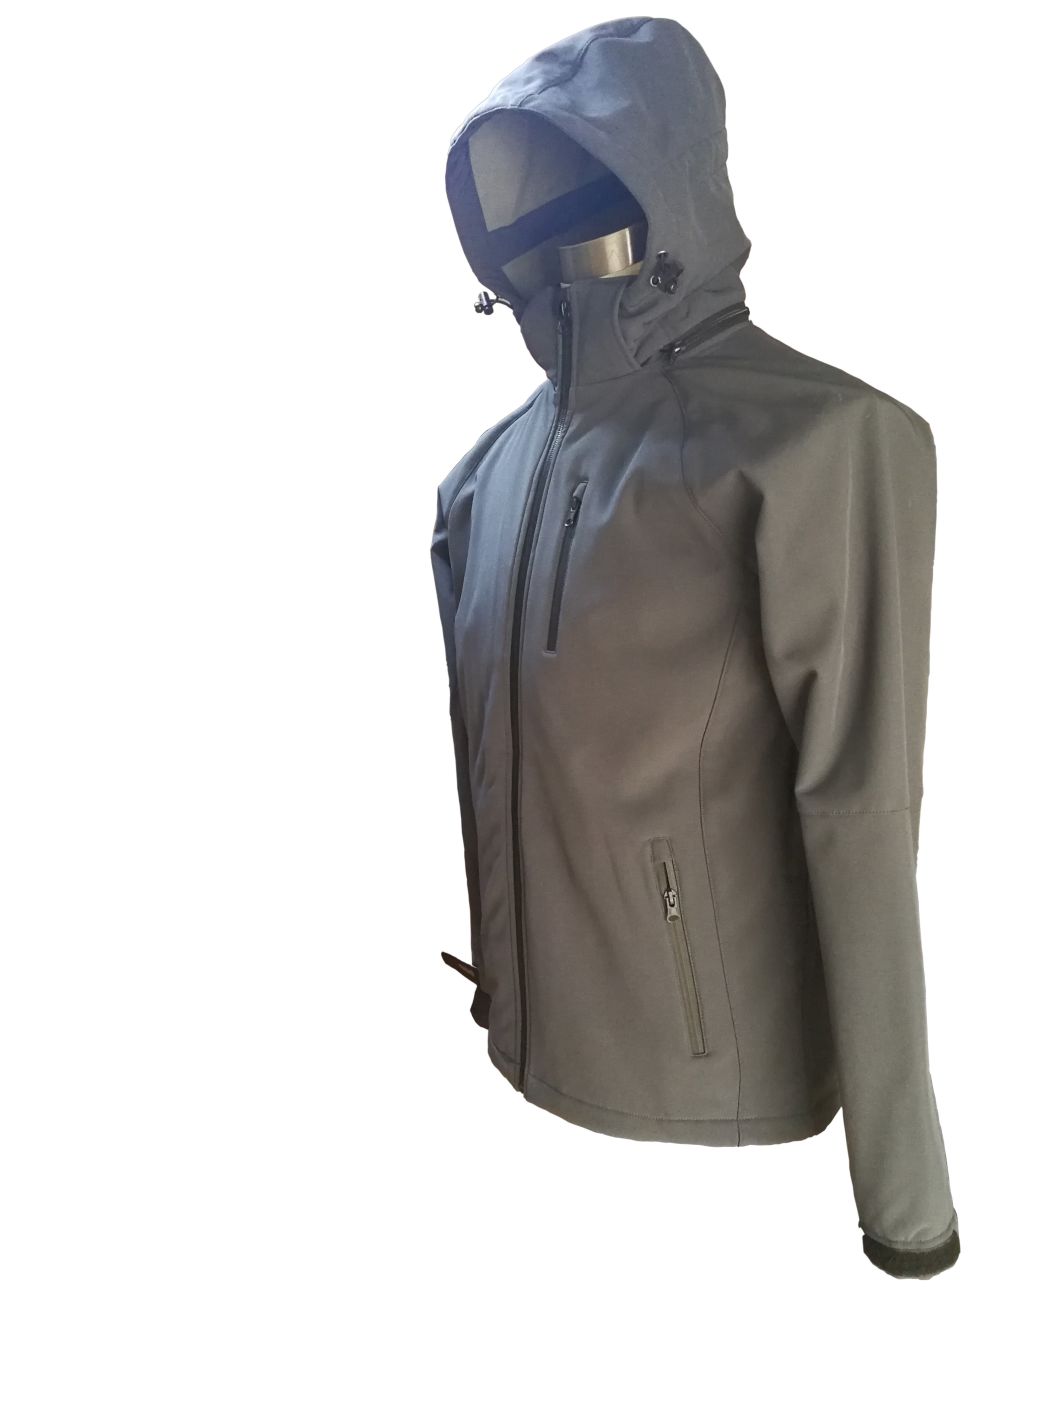 Windproon 방수 및 통기성을 갖춘 남성용 소프트쉘 재킷